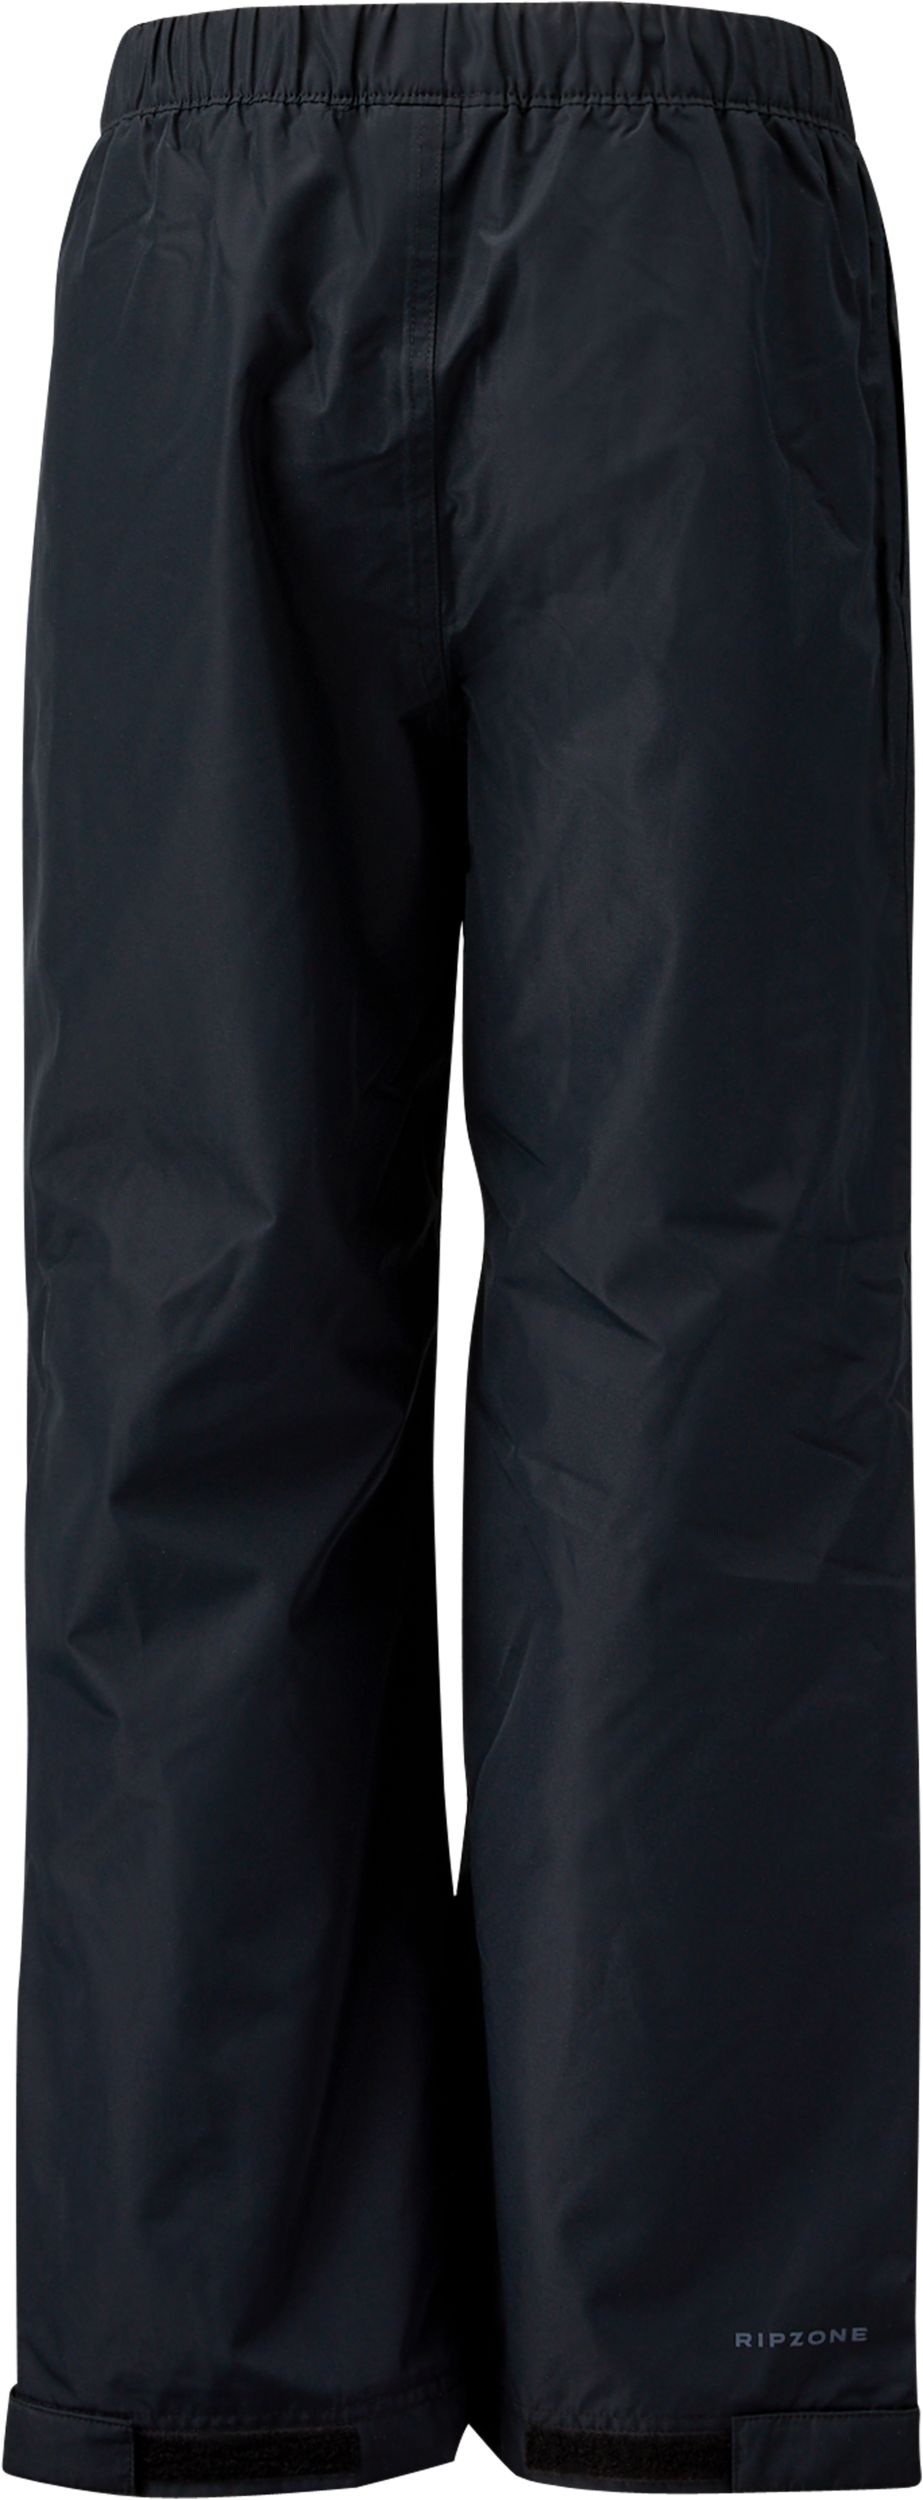 Fleece-lined rain trousers - Dark blue - Kids | H&M GB